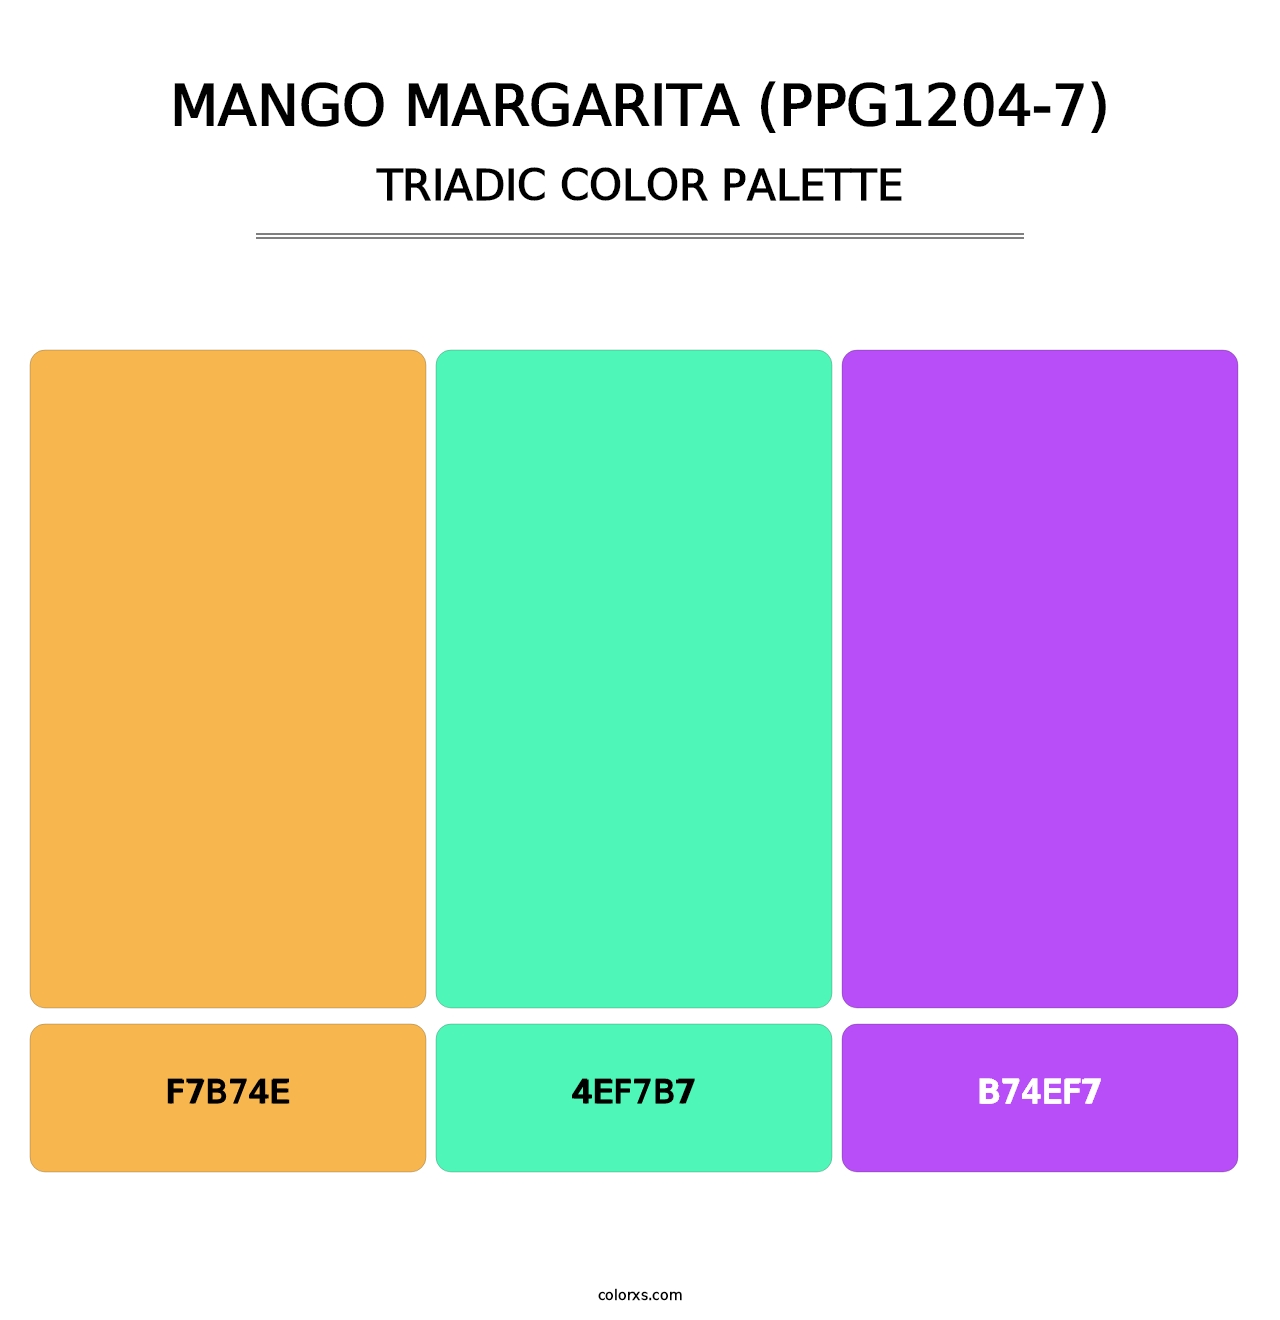 Mango Margarita (PPG1204-7) - Triadic Color Palette